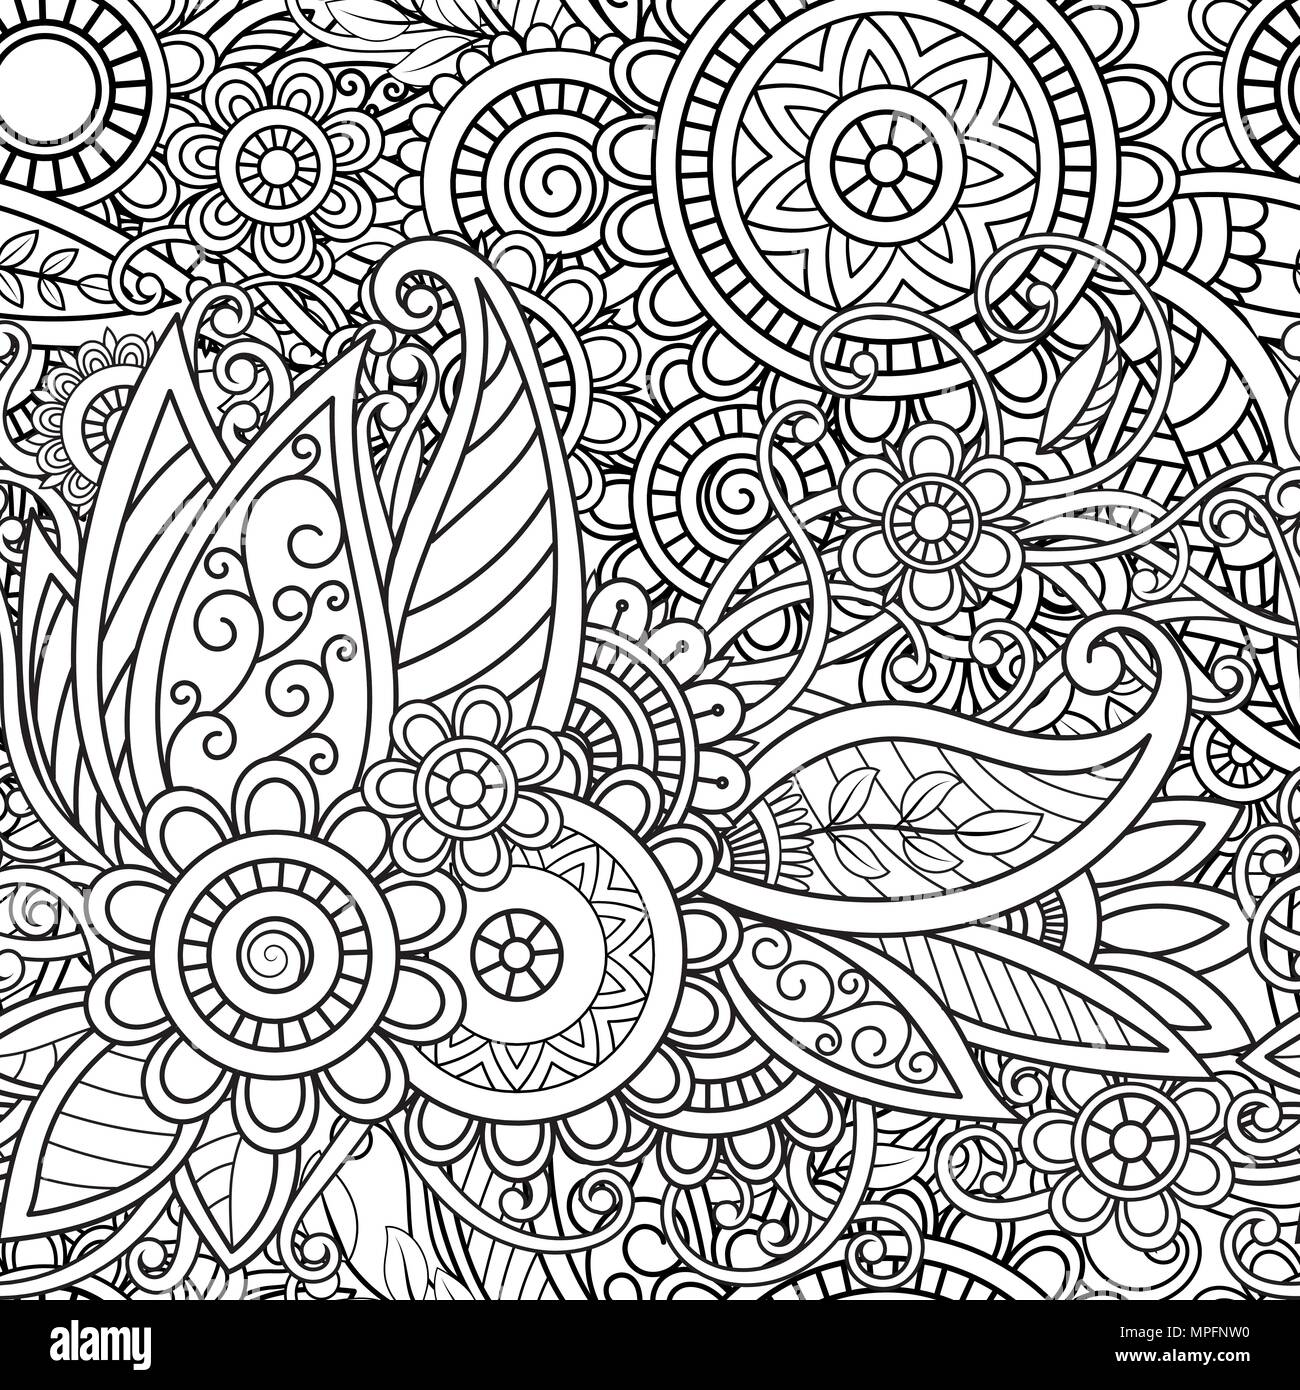 Etnica pattern senza soluzione di continuità con i mandala, fiori e foglie. Doodle floreale in bianco e nero ornamento. Perfetto per la carta da parati, adulti libri da colorare, pagina web background e texture di superficie. Illustrazione Vettoriale